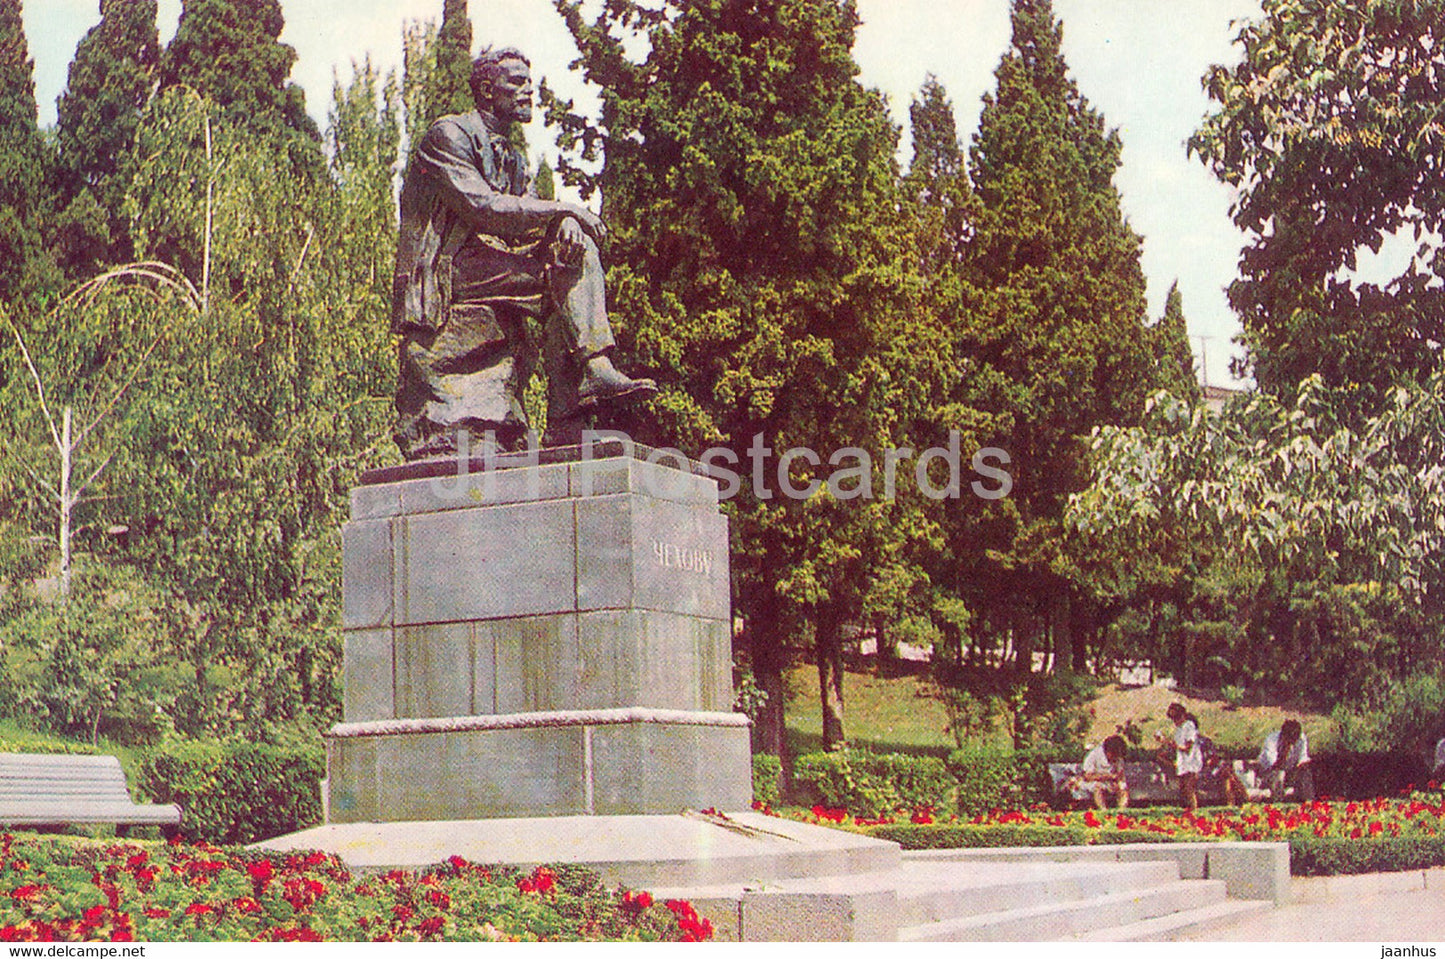 Yalta - Crimea - monument to Russian writer Chekhov - 1976 - Ukraine USSR - unused - JH Postcards